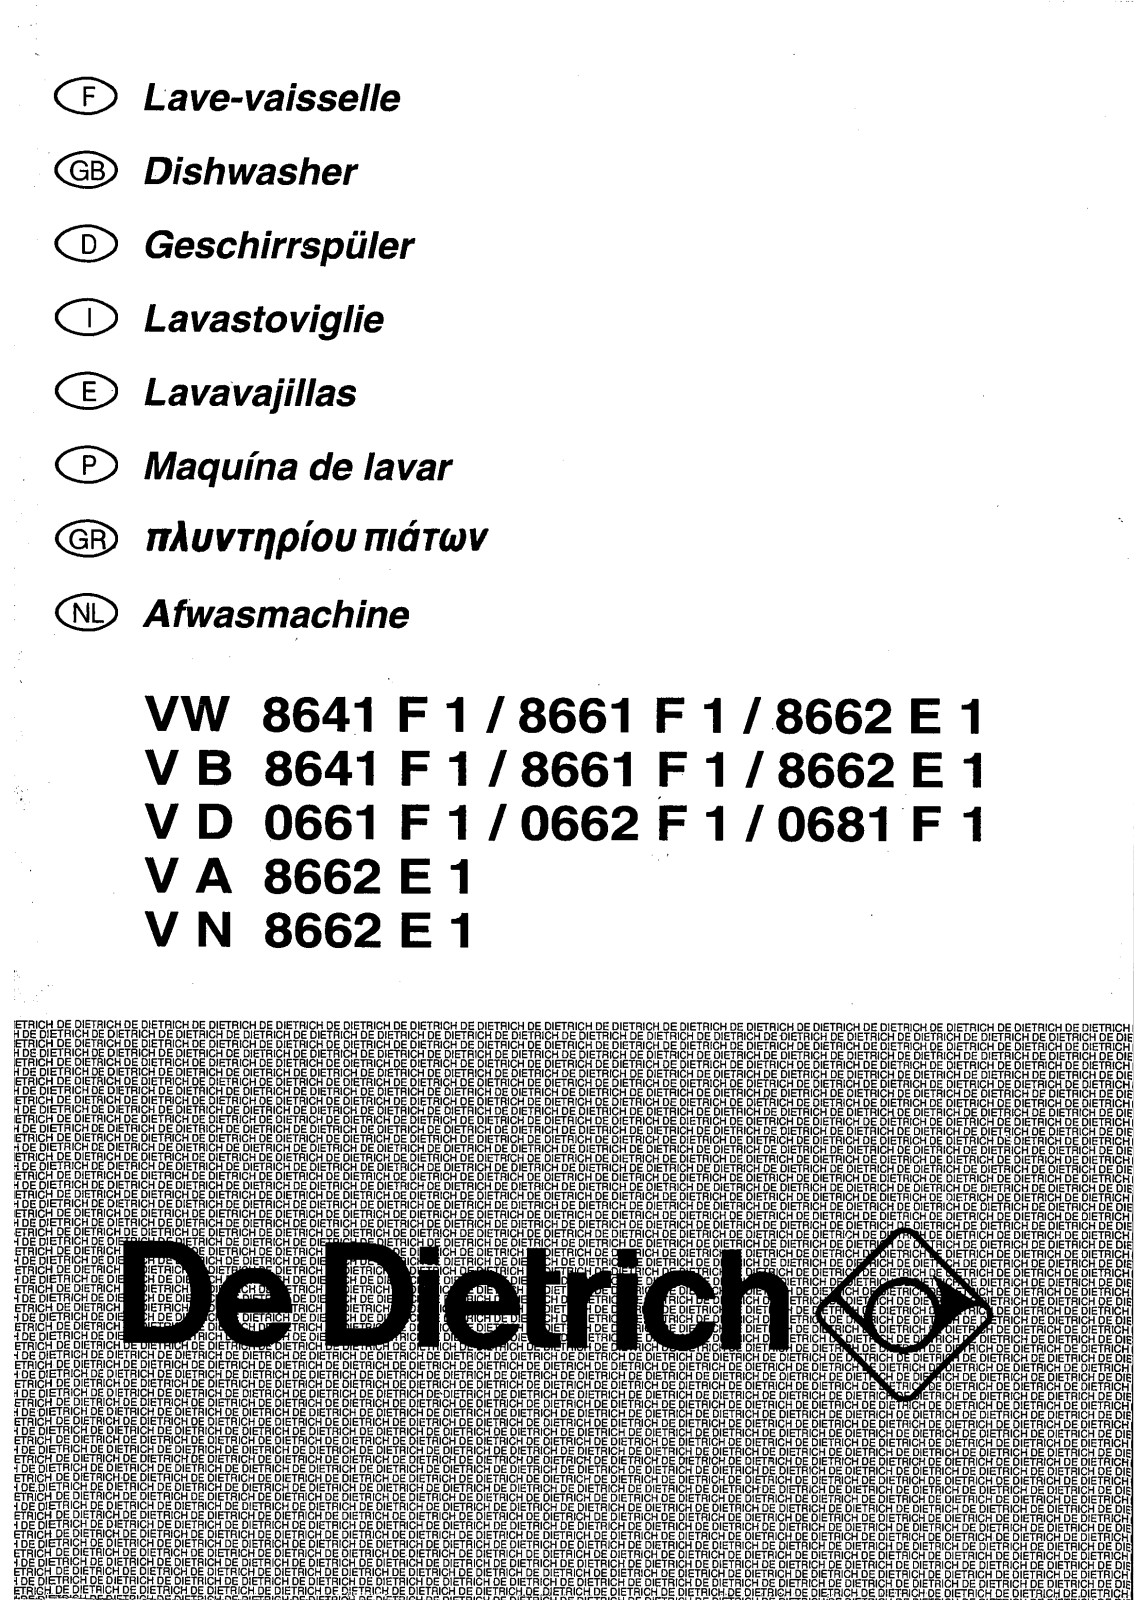 De dietrich VB8641F1, VN8682E1, VA8662E1, VD0661F1, VB8662E1 User Manual